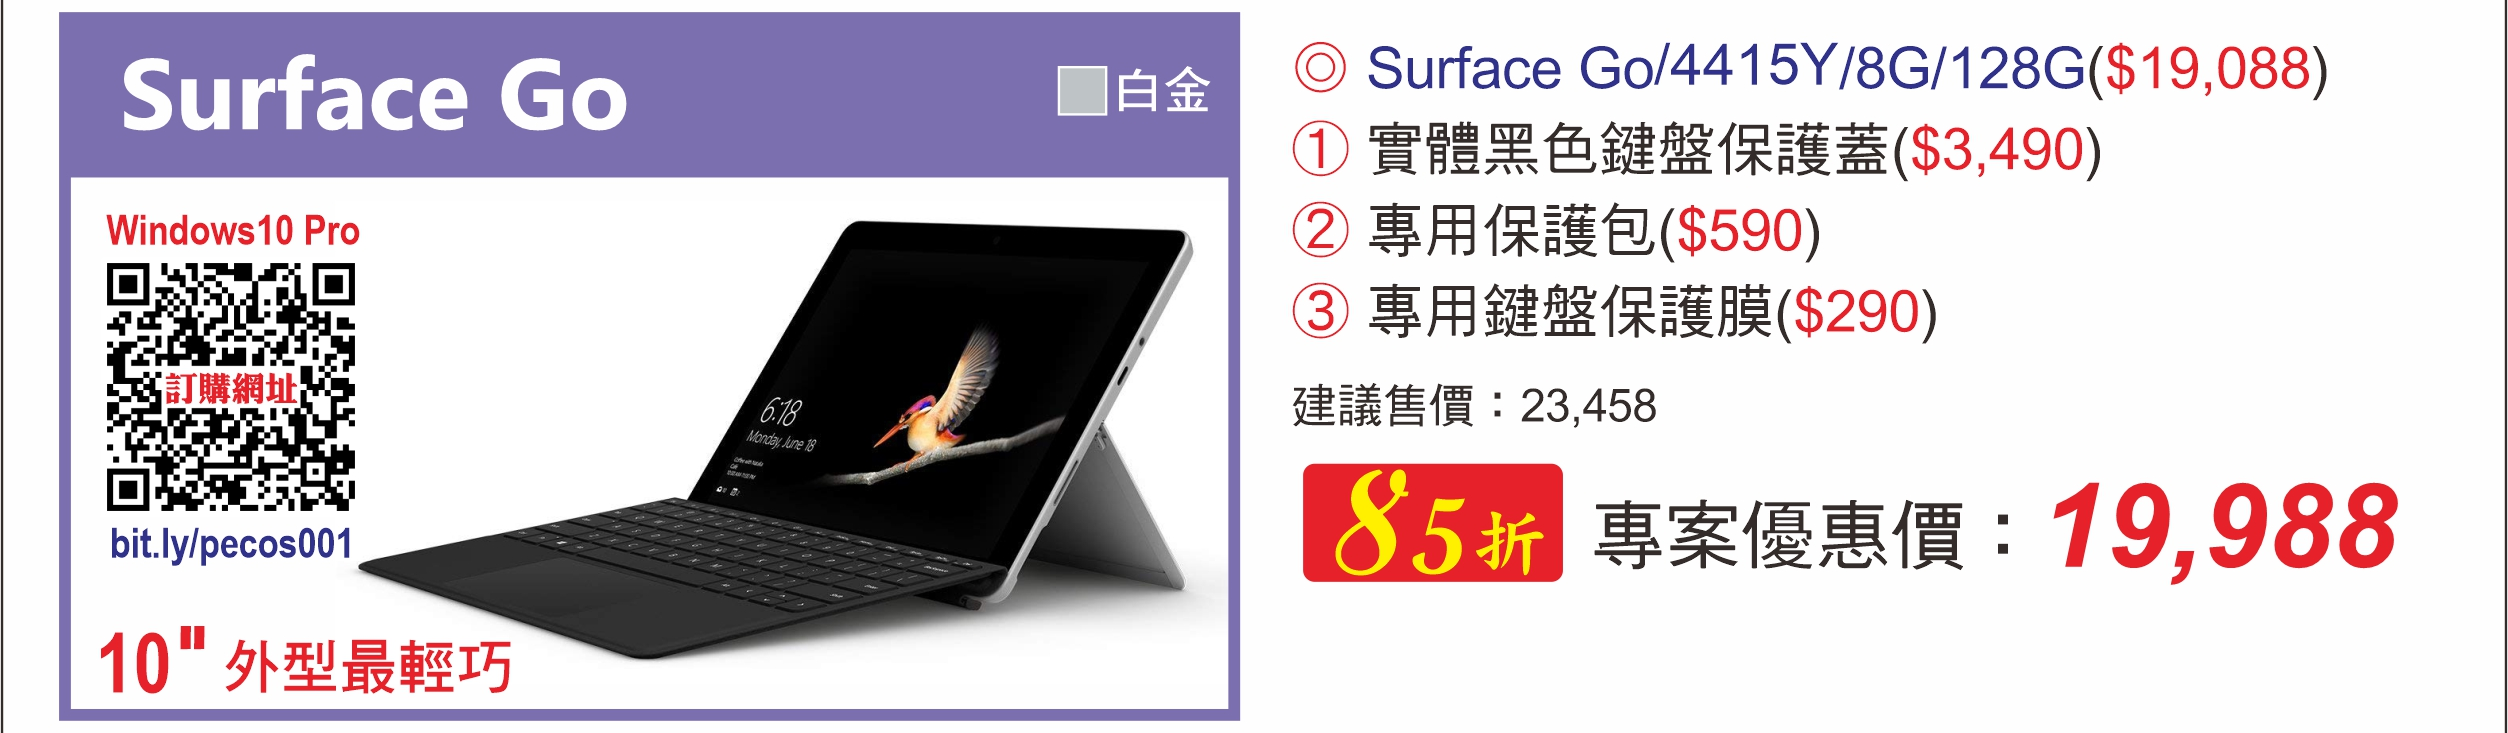 Surface Go 4415Y/8G/128G (統一員購)